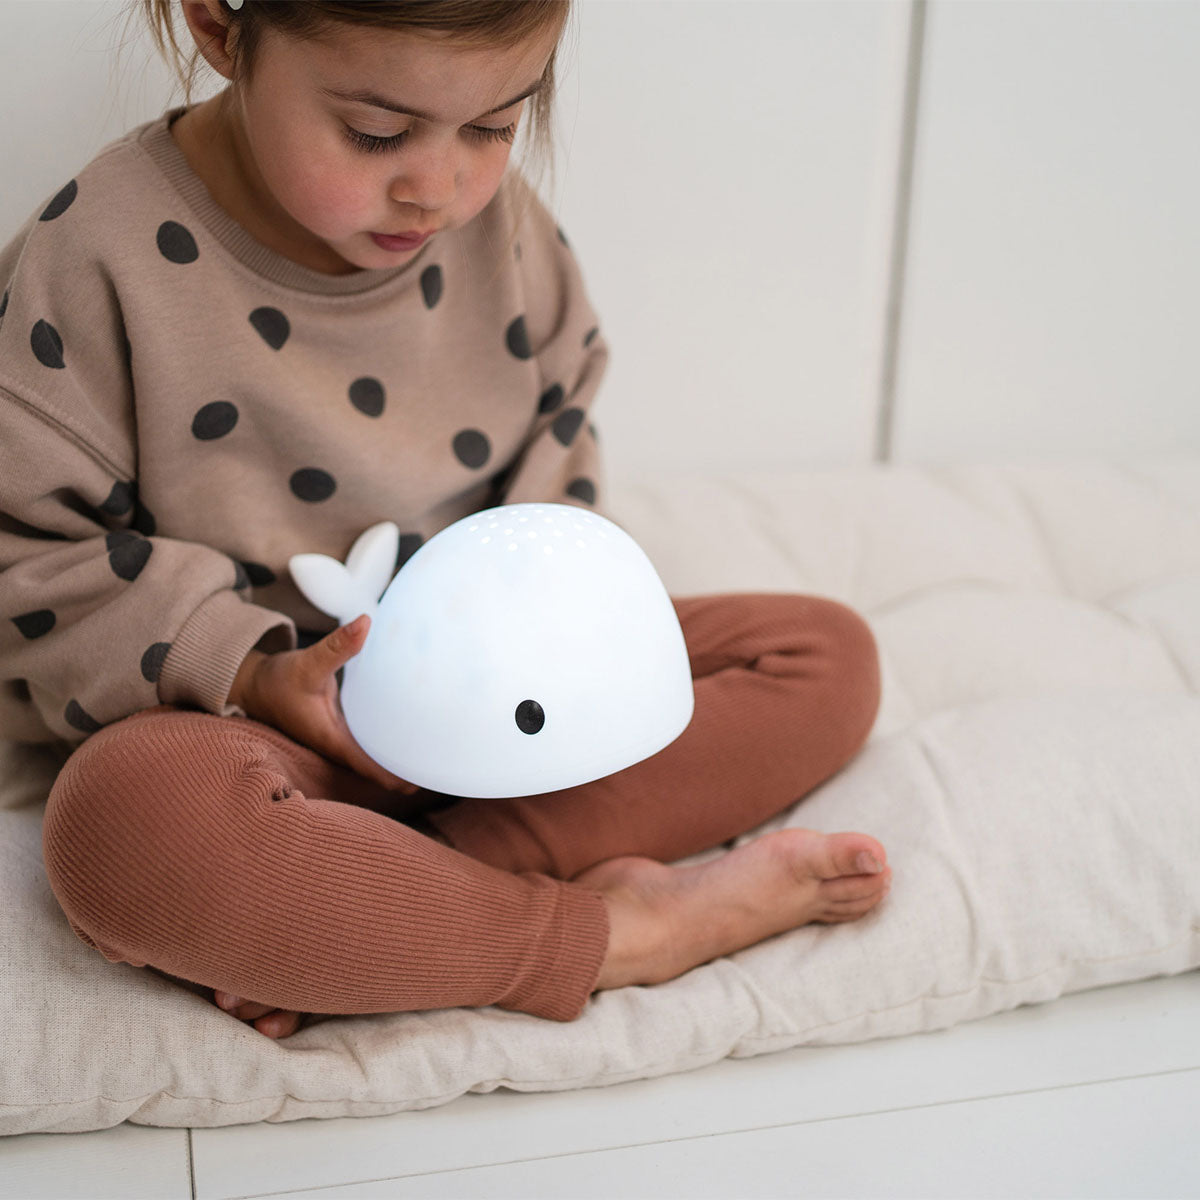 De Flow Amsterdam projectorlamp Moby voegt een beetje magie toe aan de kinderkamer van je kleintje. Als je de projector aanzet verschijnen er allemaal stipjes op het plafond. VanZus